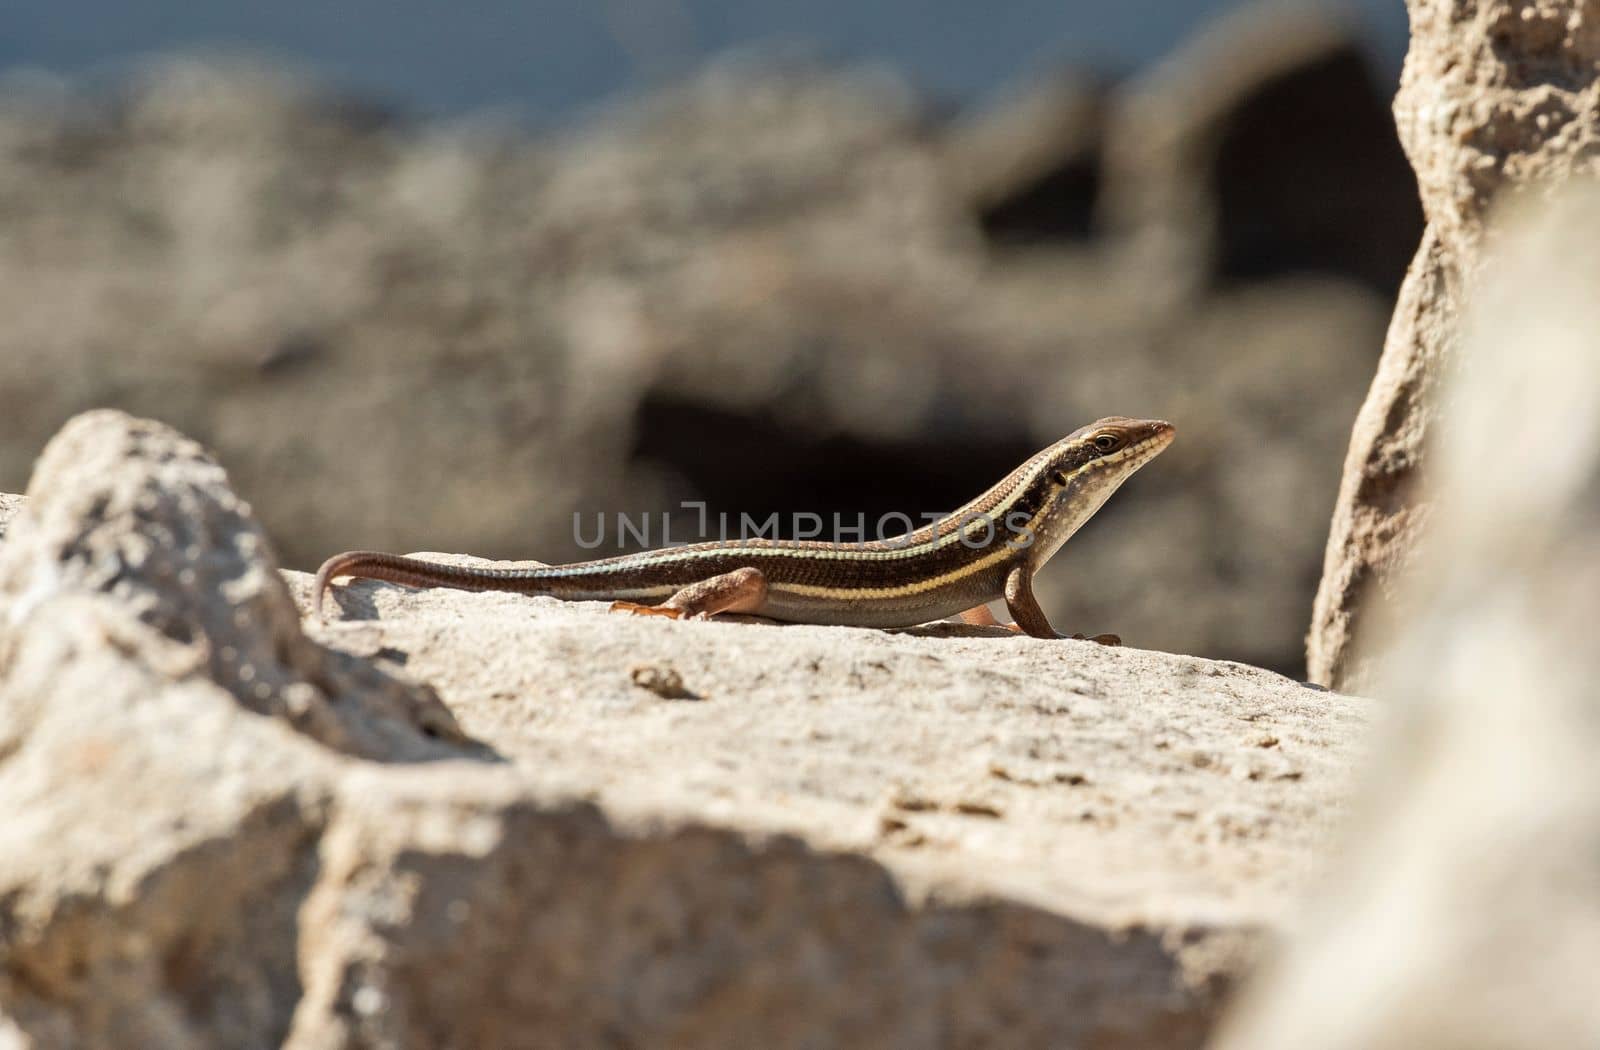 Blue-tailed skink lizard on a rock in garden by paulvinten